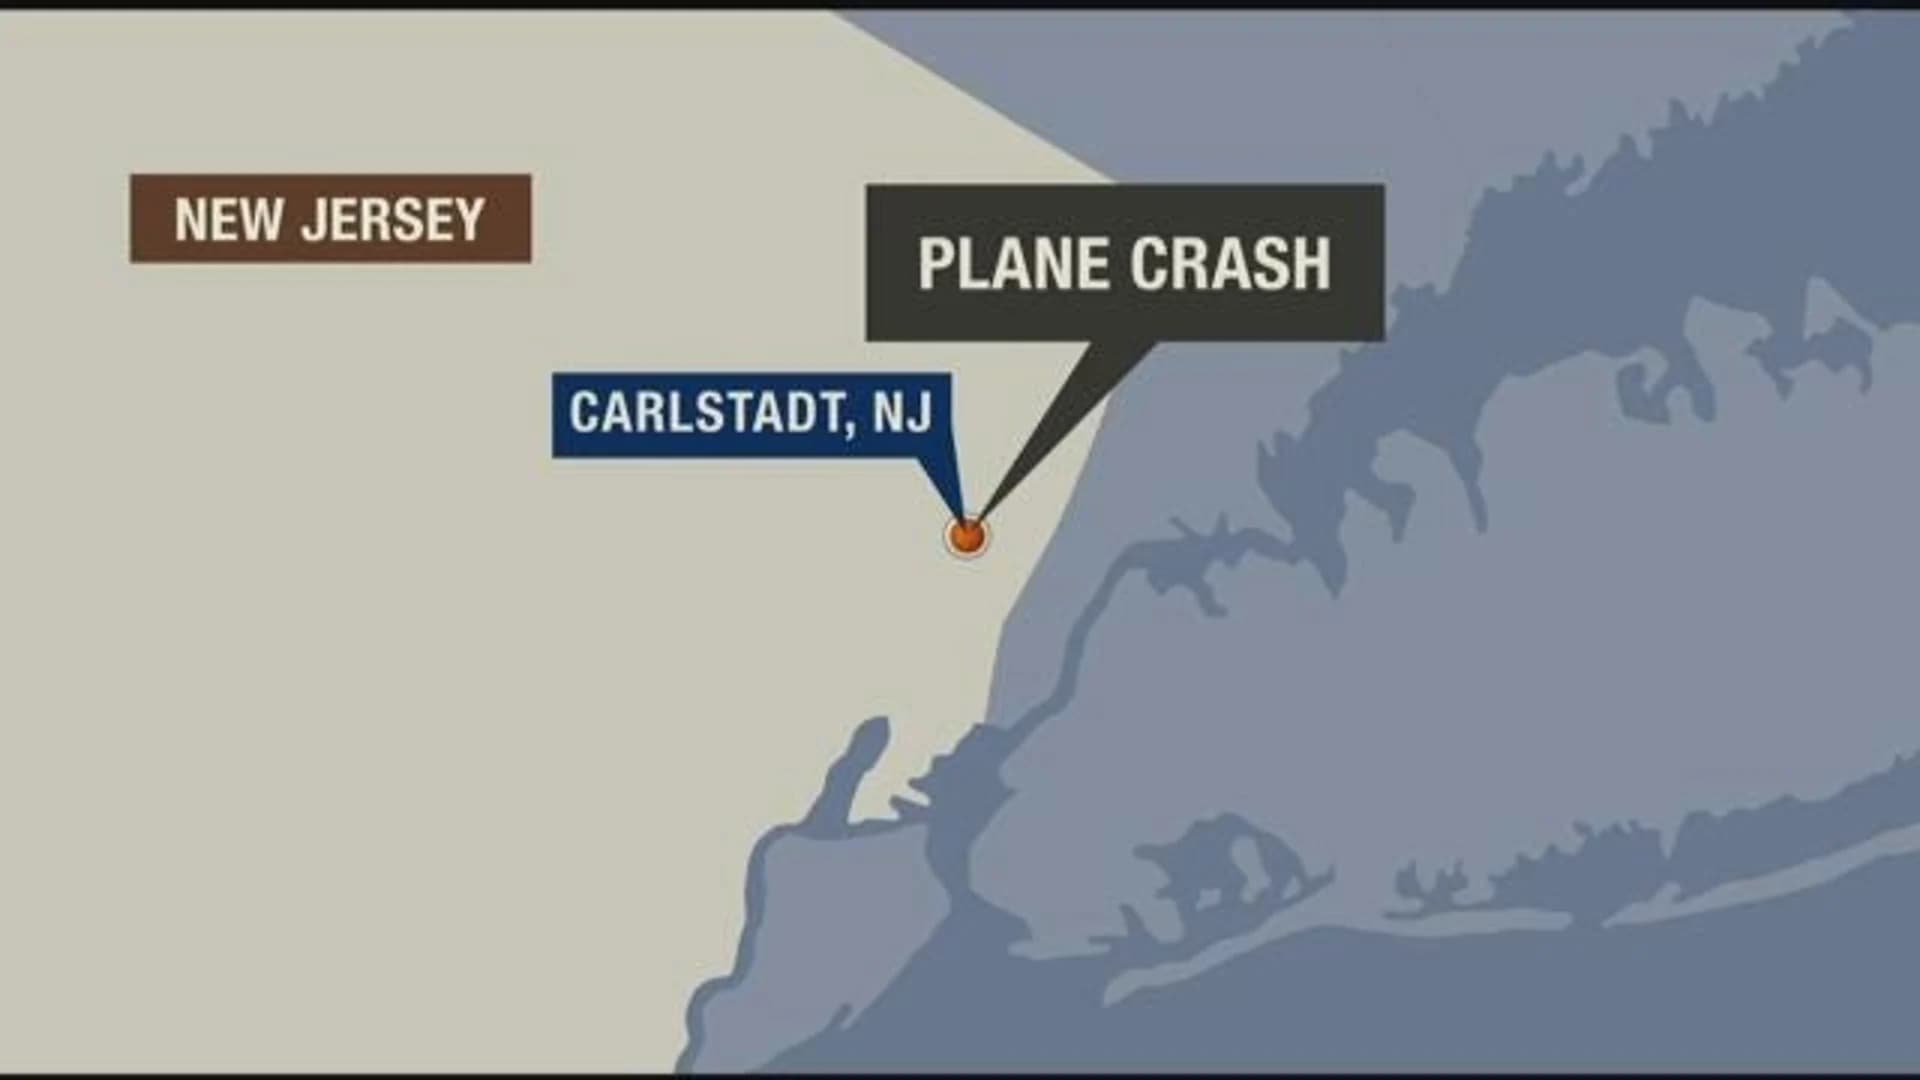 2 killed in Learjet crash near Carlstadt DPW yard